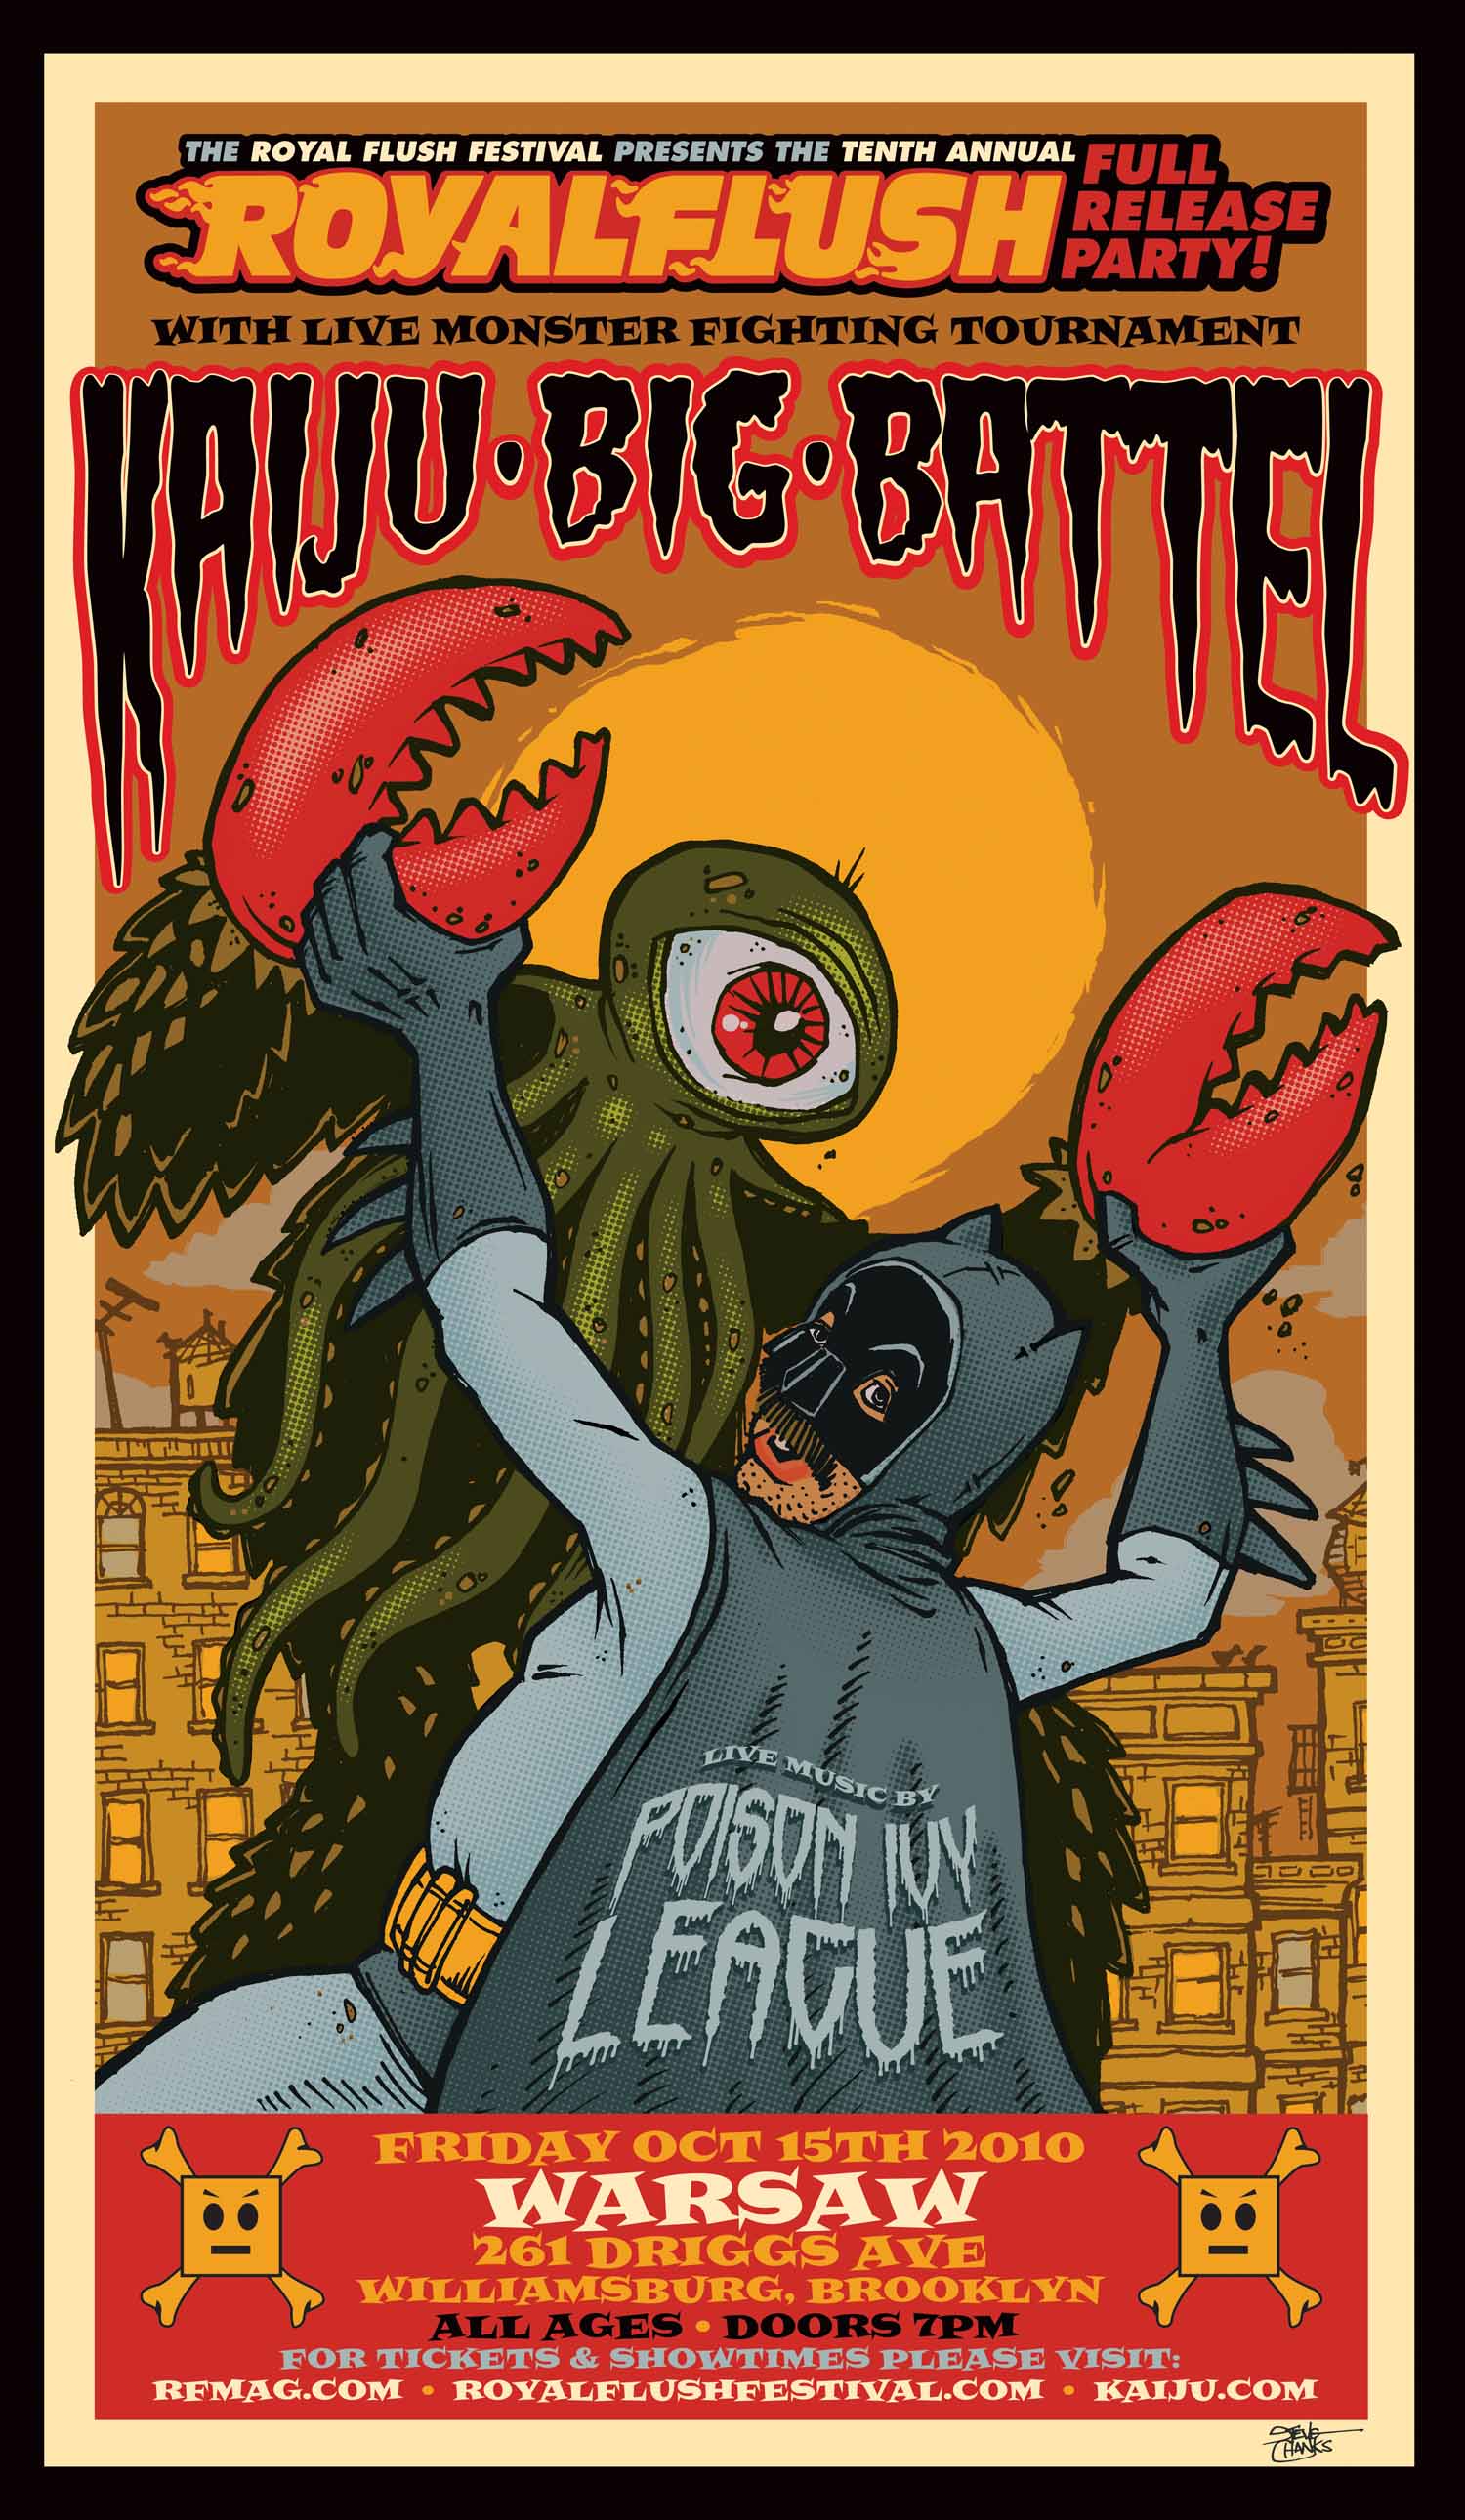 Kaiju Big Battel to rumble at NY’s Royal Flush Festival